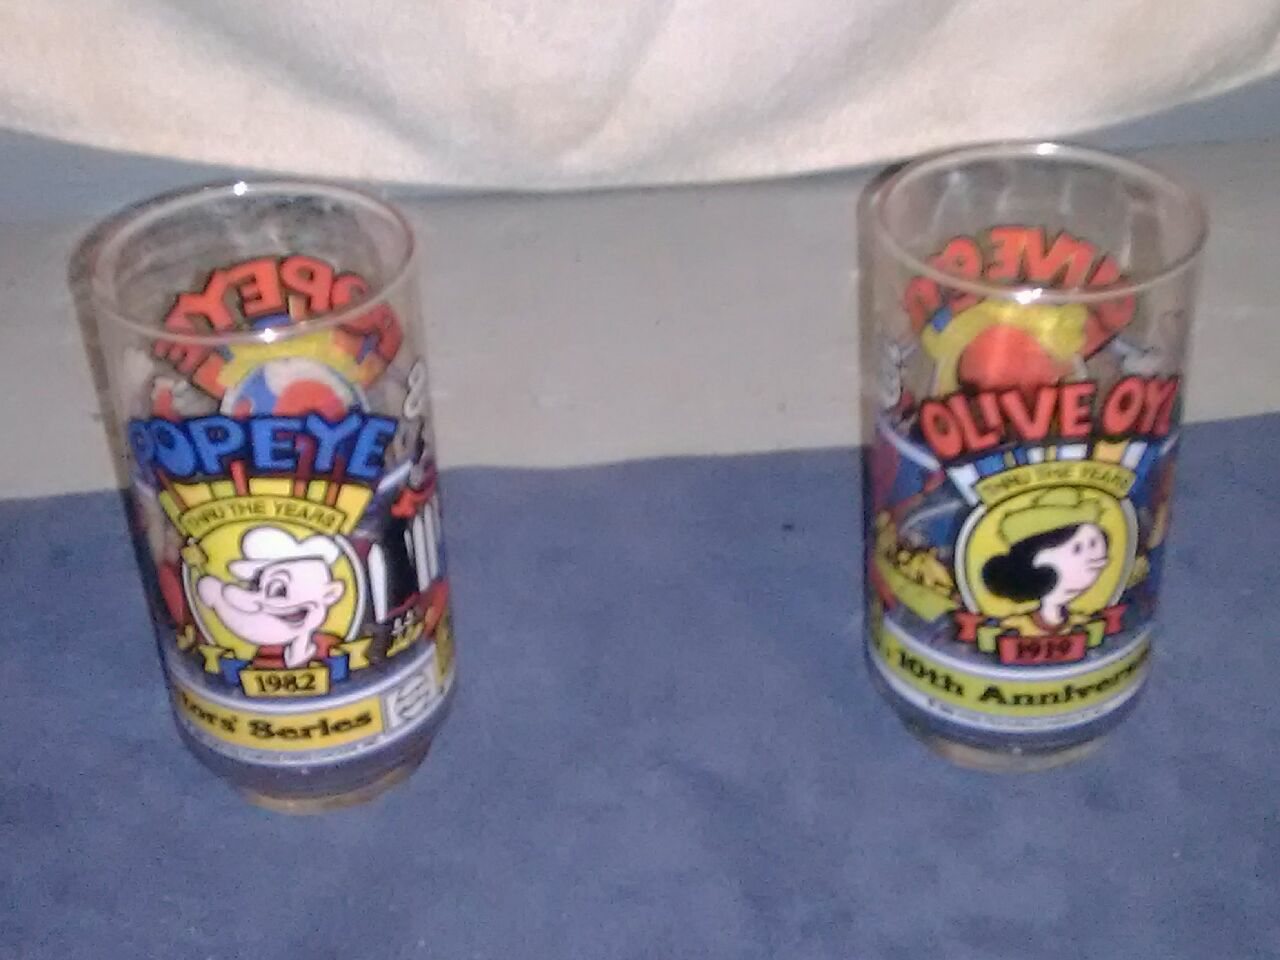 Popeye and Olive Oyl glasses